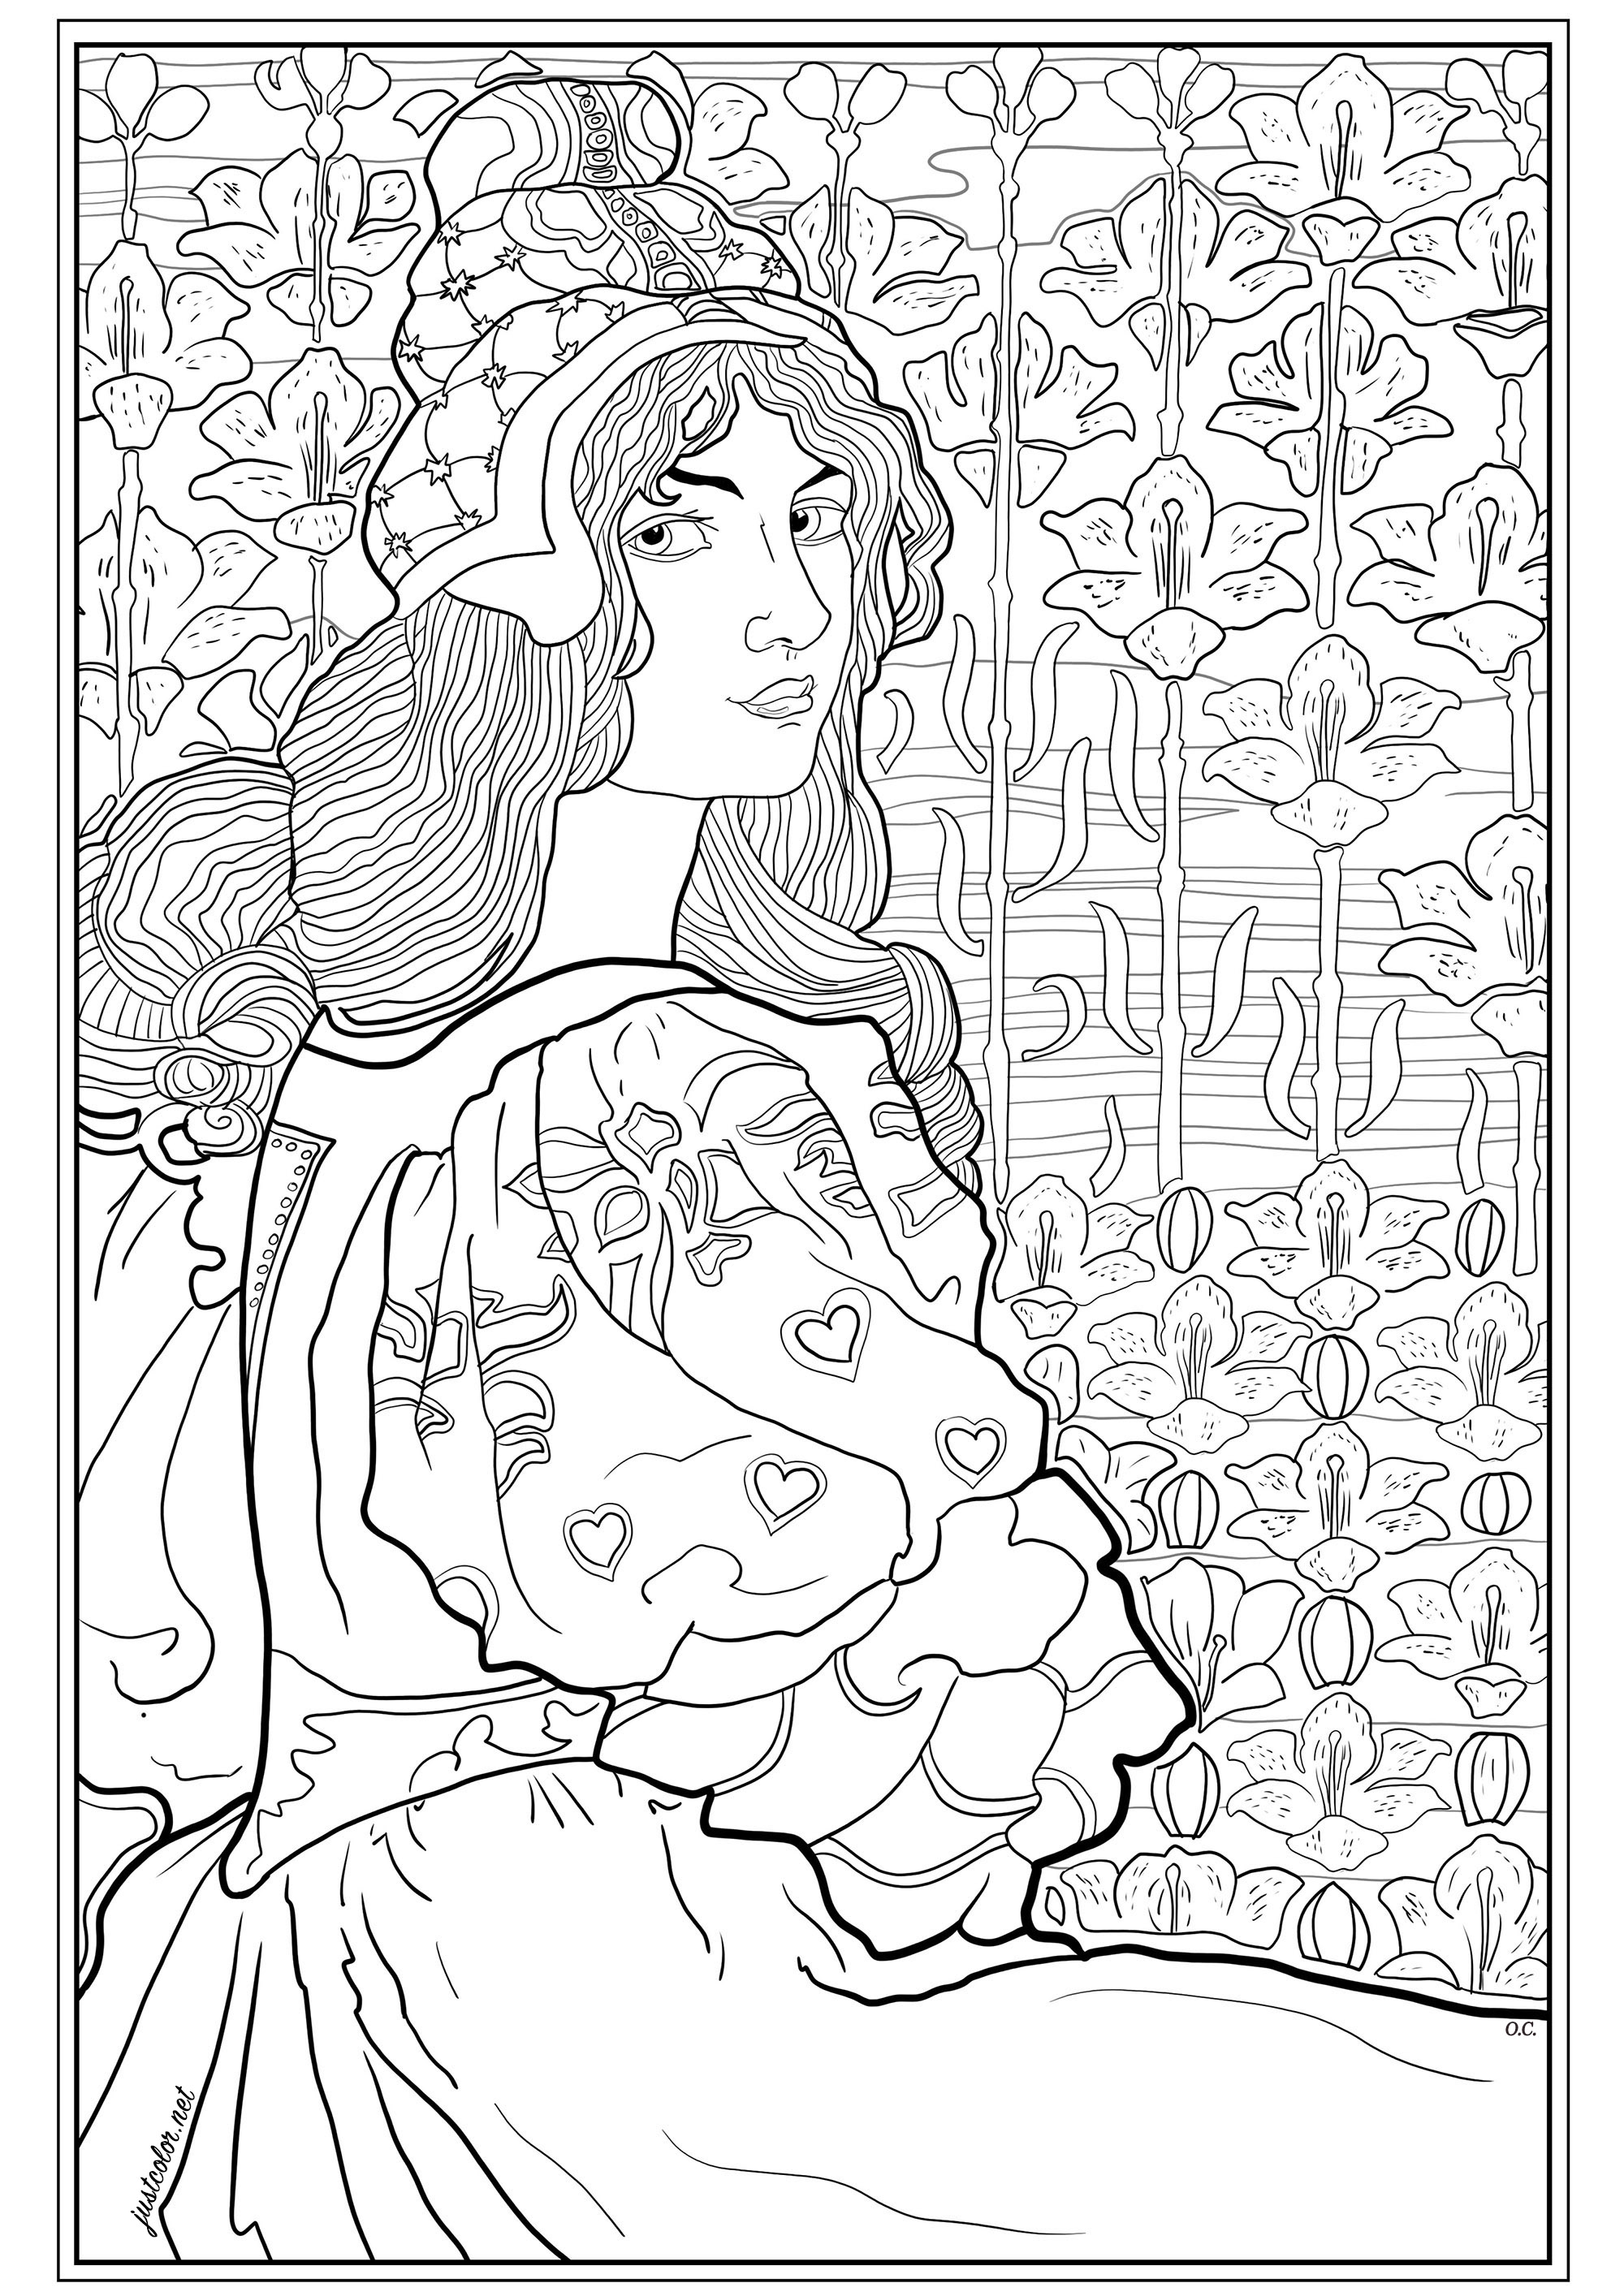 Coloração criada a partir de uma litografia original de Louis Rhead (1898). Esta ilustração, publicada para L'Estampe Moderne, mostra Jane, uma jovem mulher de cabelo comprido, num fundo de lírios estilizados, Artista : Olivier